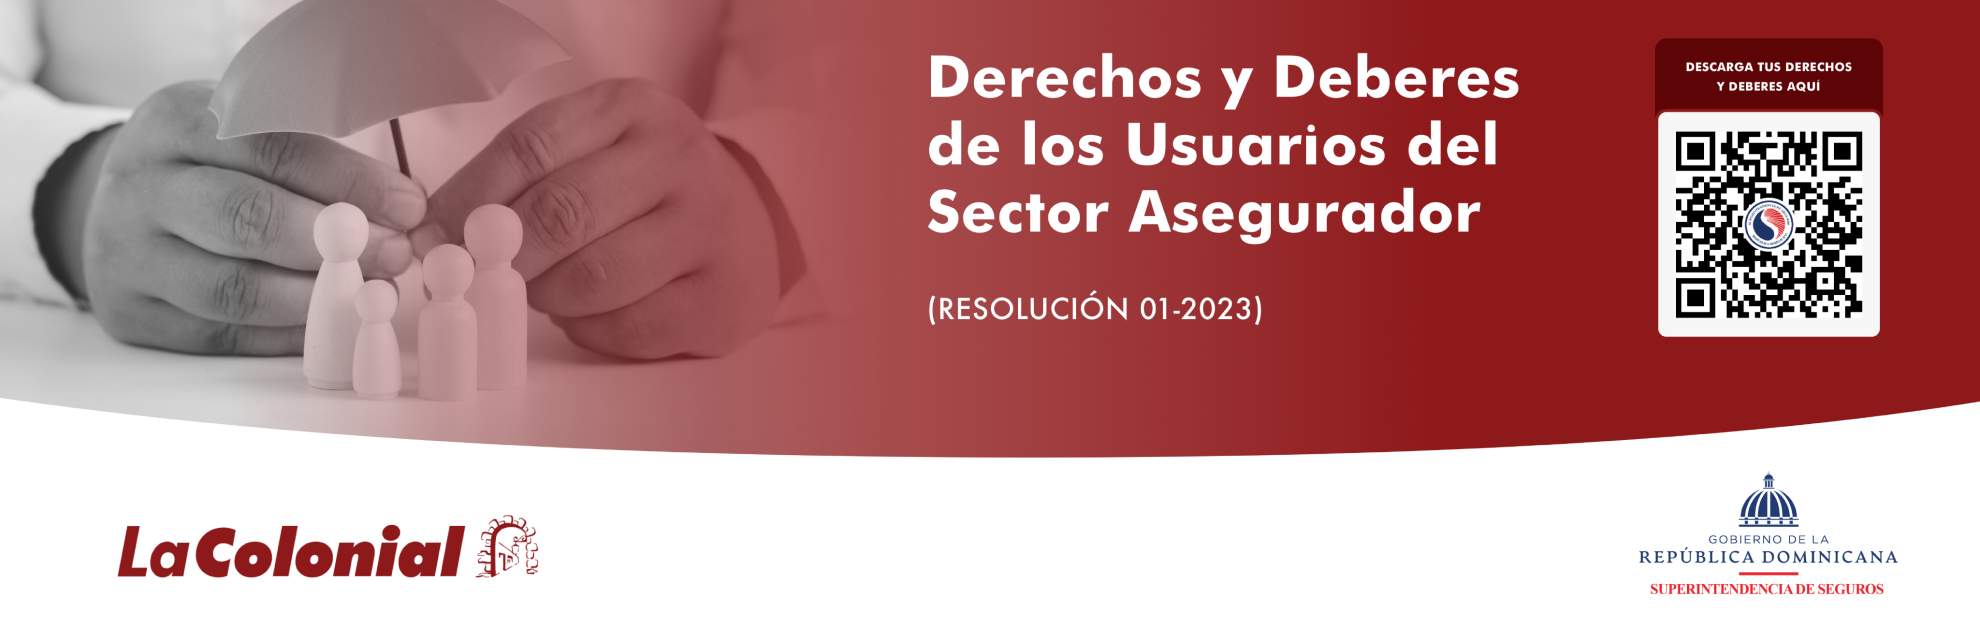 Derechos y Deberes de los Usuarios del Sector Asegurador - Resolución 01-2023